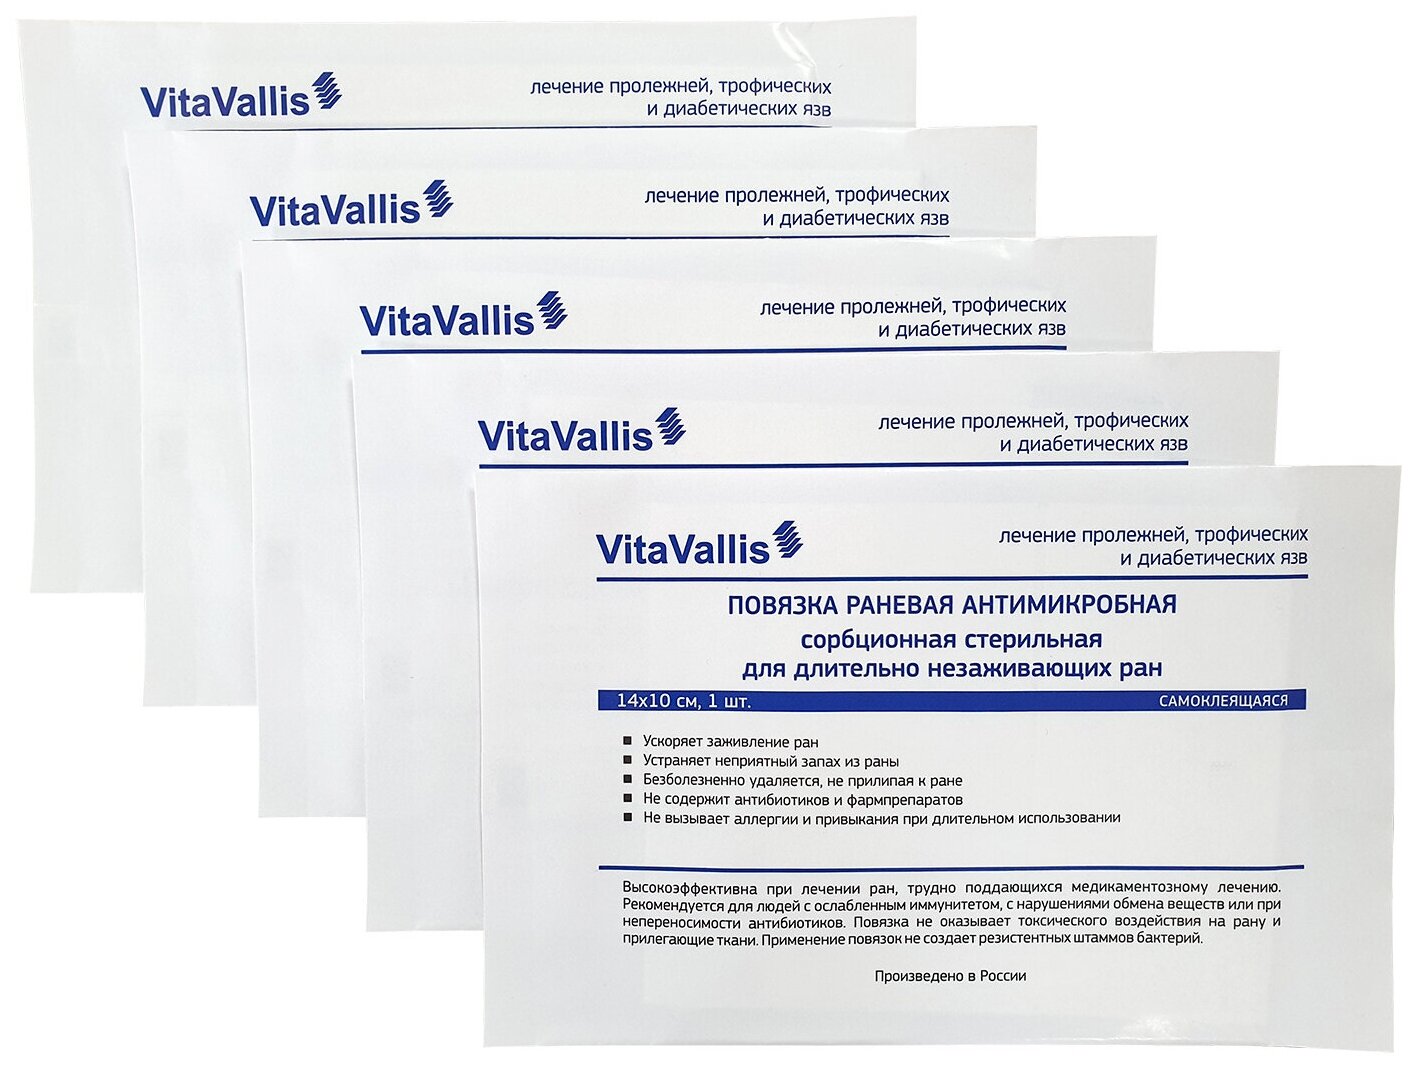 VitaVallis повязка раневая антимикробная сорбционная для длительно незаживающих ран. 14х10см. Самоклеящаяся. 5 шт.